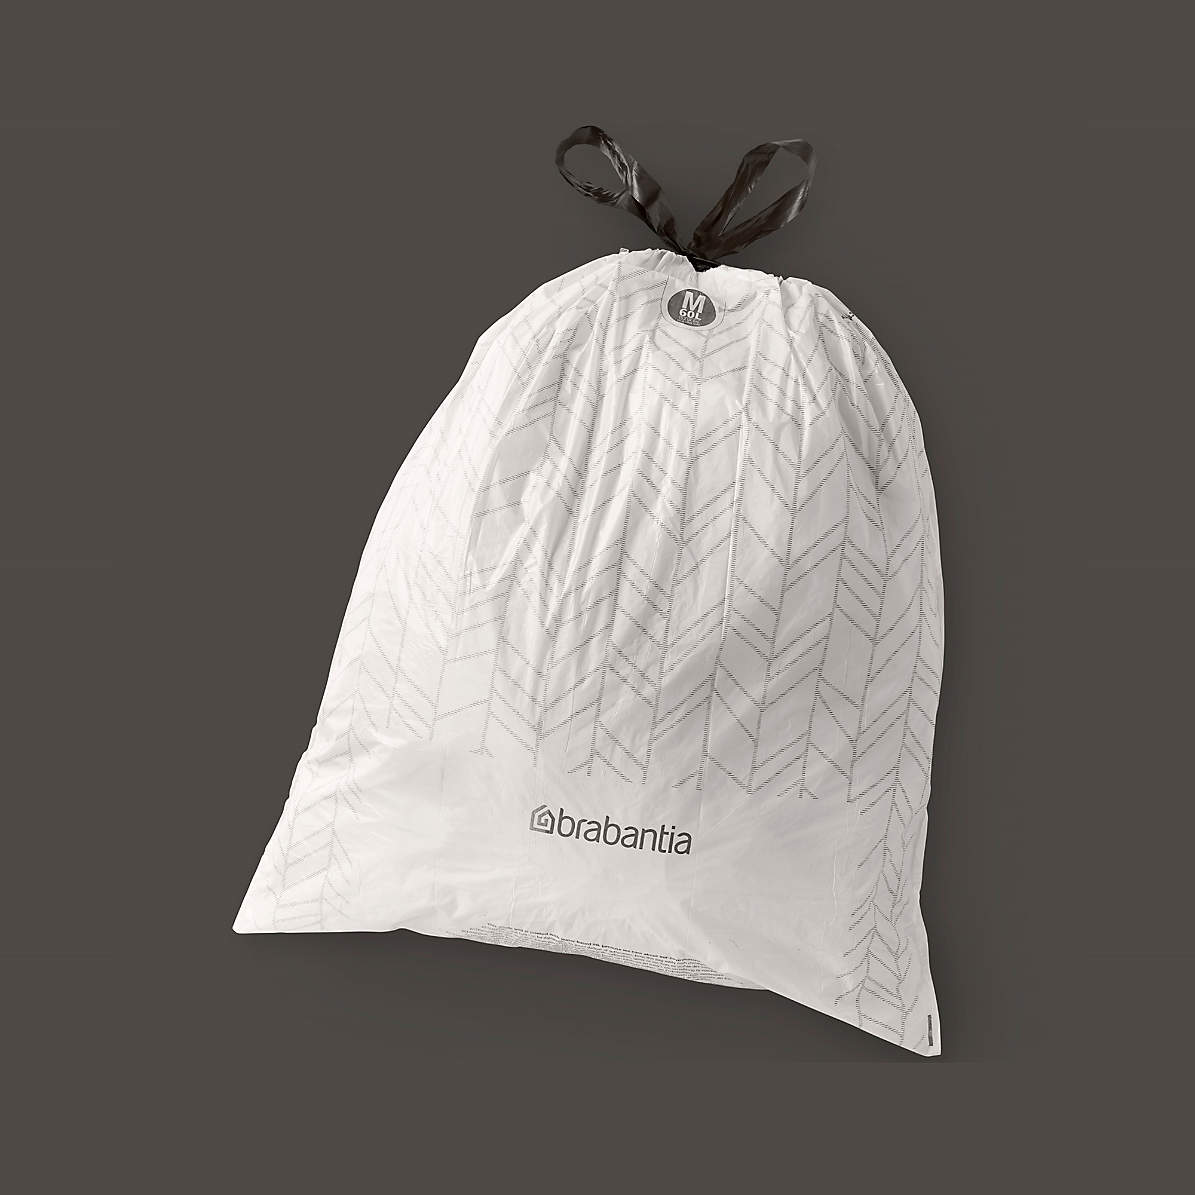 Brabantia Code J PerfectFit Trash Bags, 120 Count + Reviews